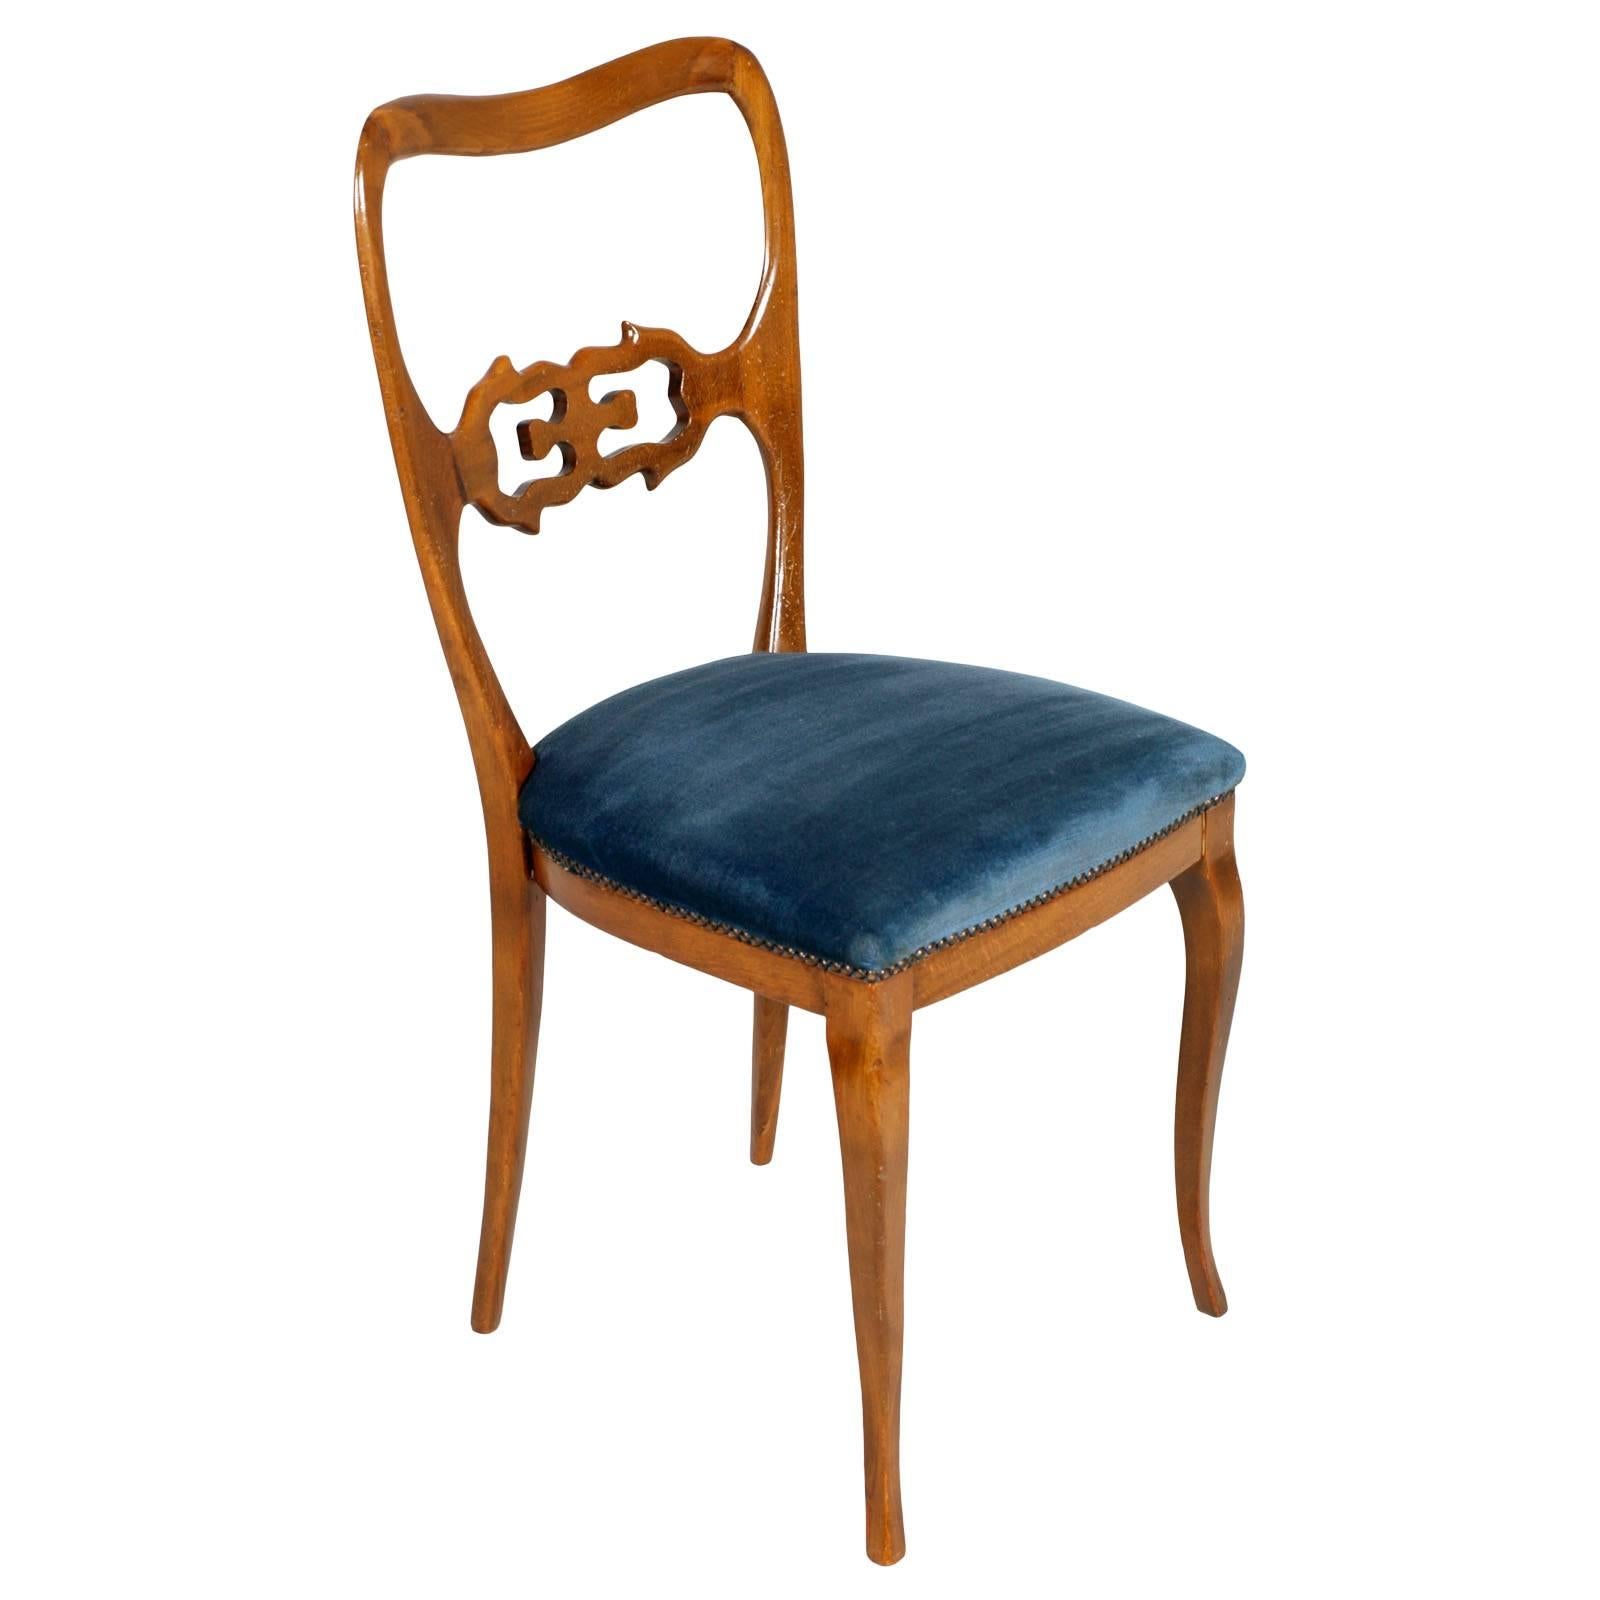 Six chaises de salle à manger sculpturales du milieu du siècle, Paolo Buffa attribuées restaurées, en noyer blond, restaurées et cirées avec le velours original encore utilisable. Sur demande, nous pouvons effectuer le nouveau rembourrage avec une